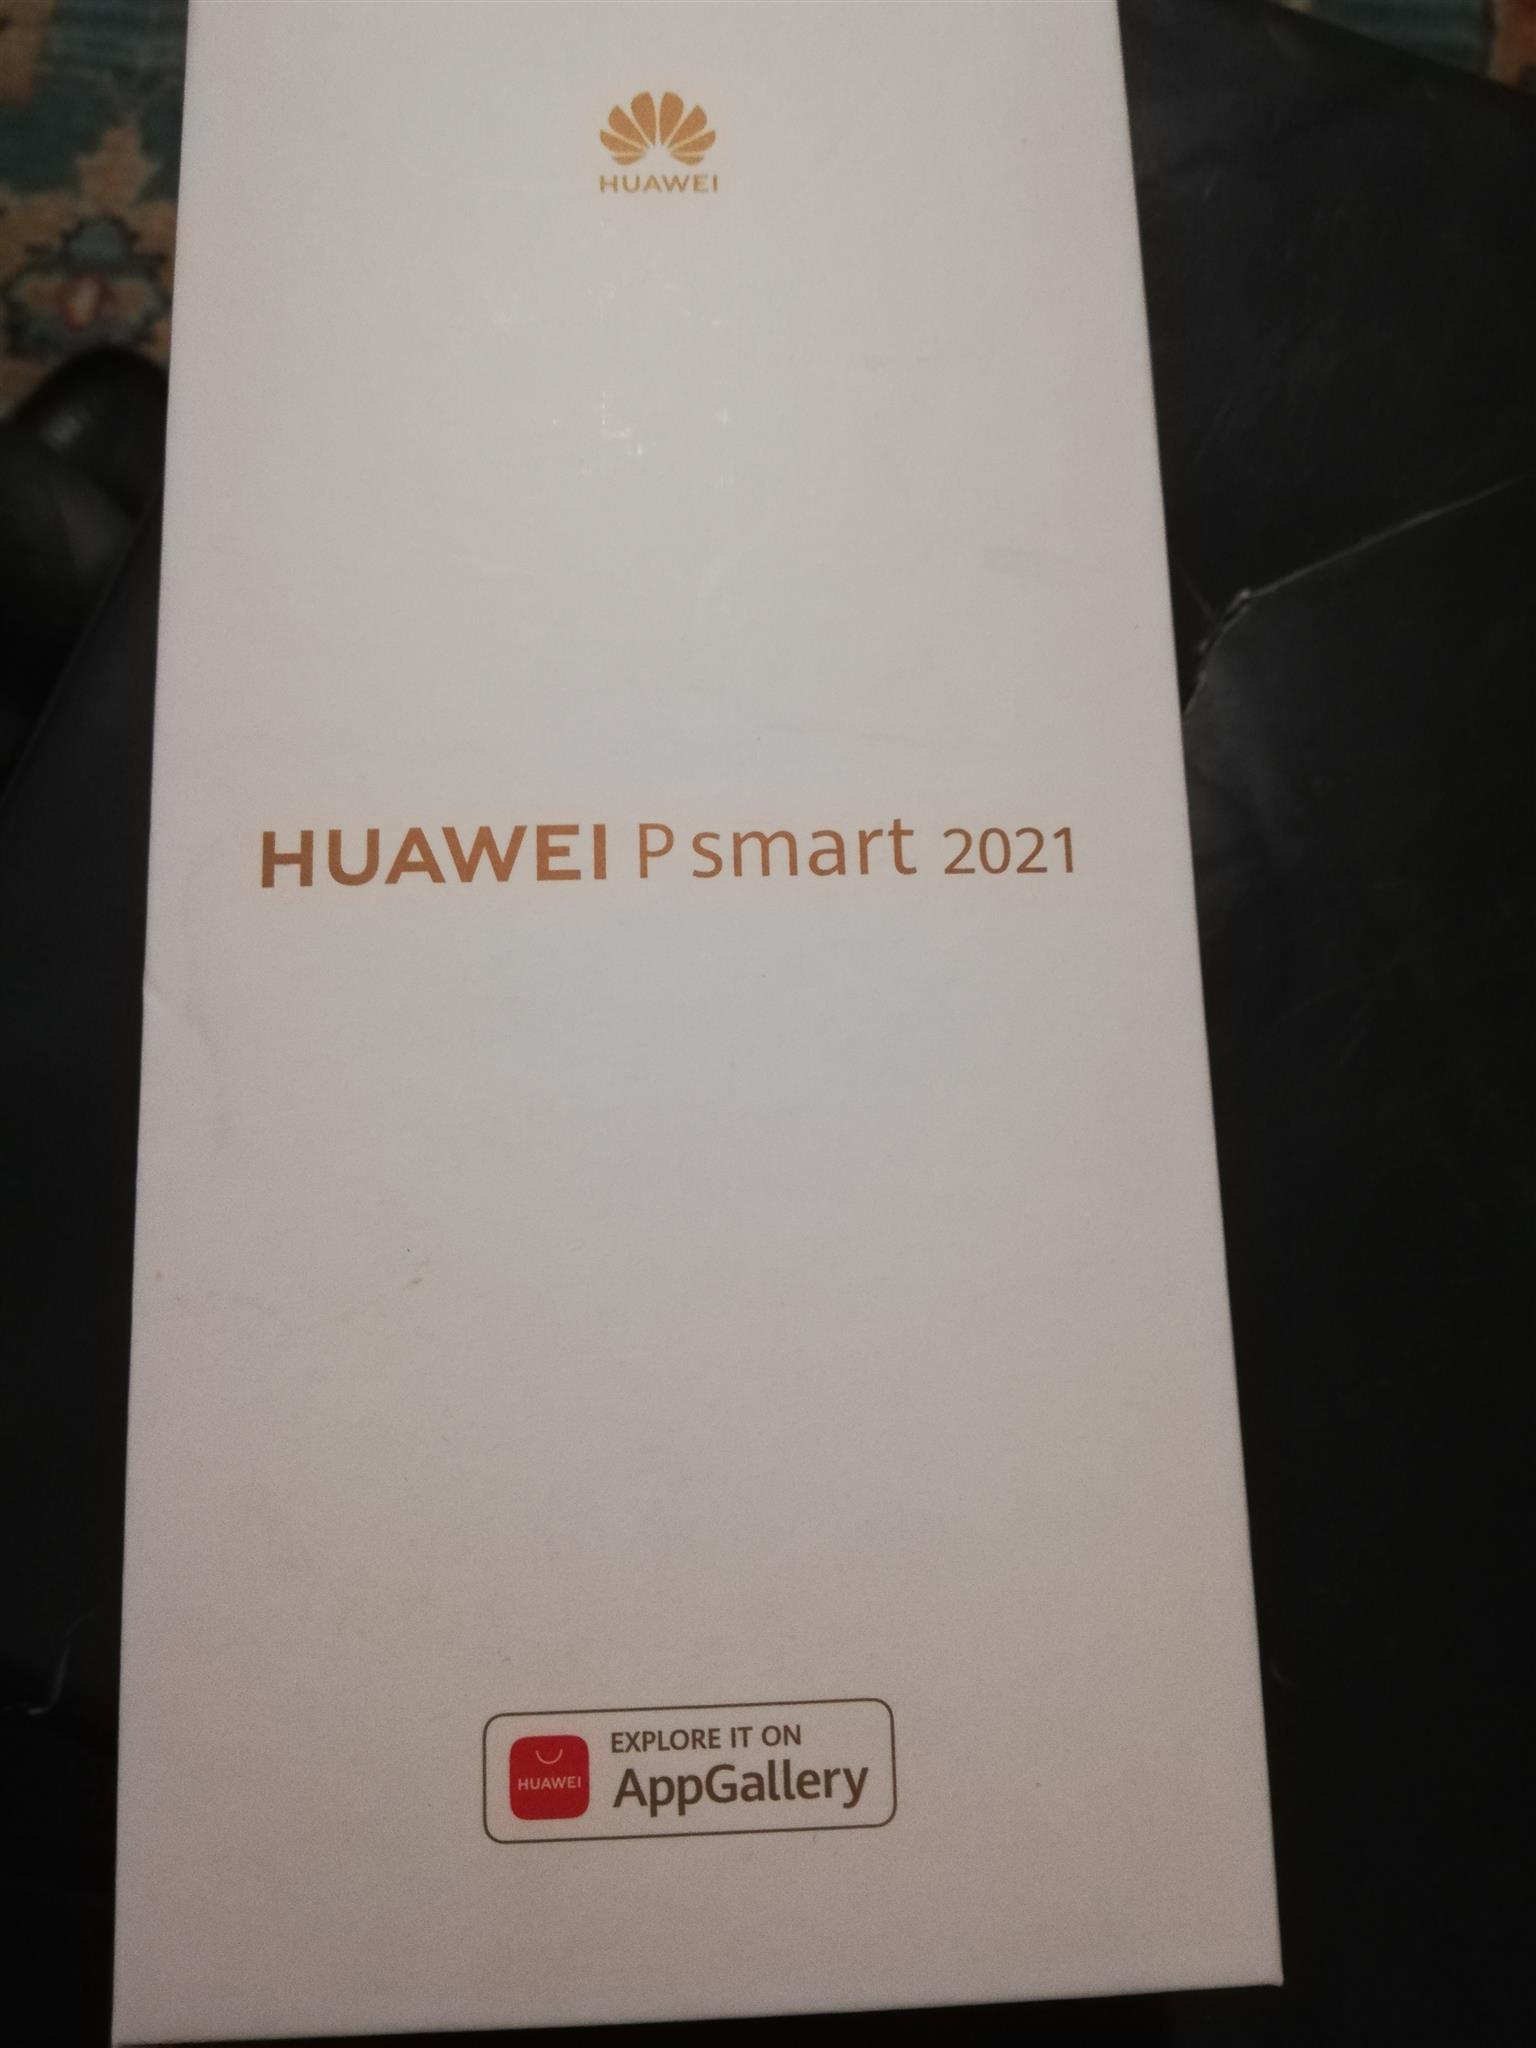 Huawei P2021 